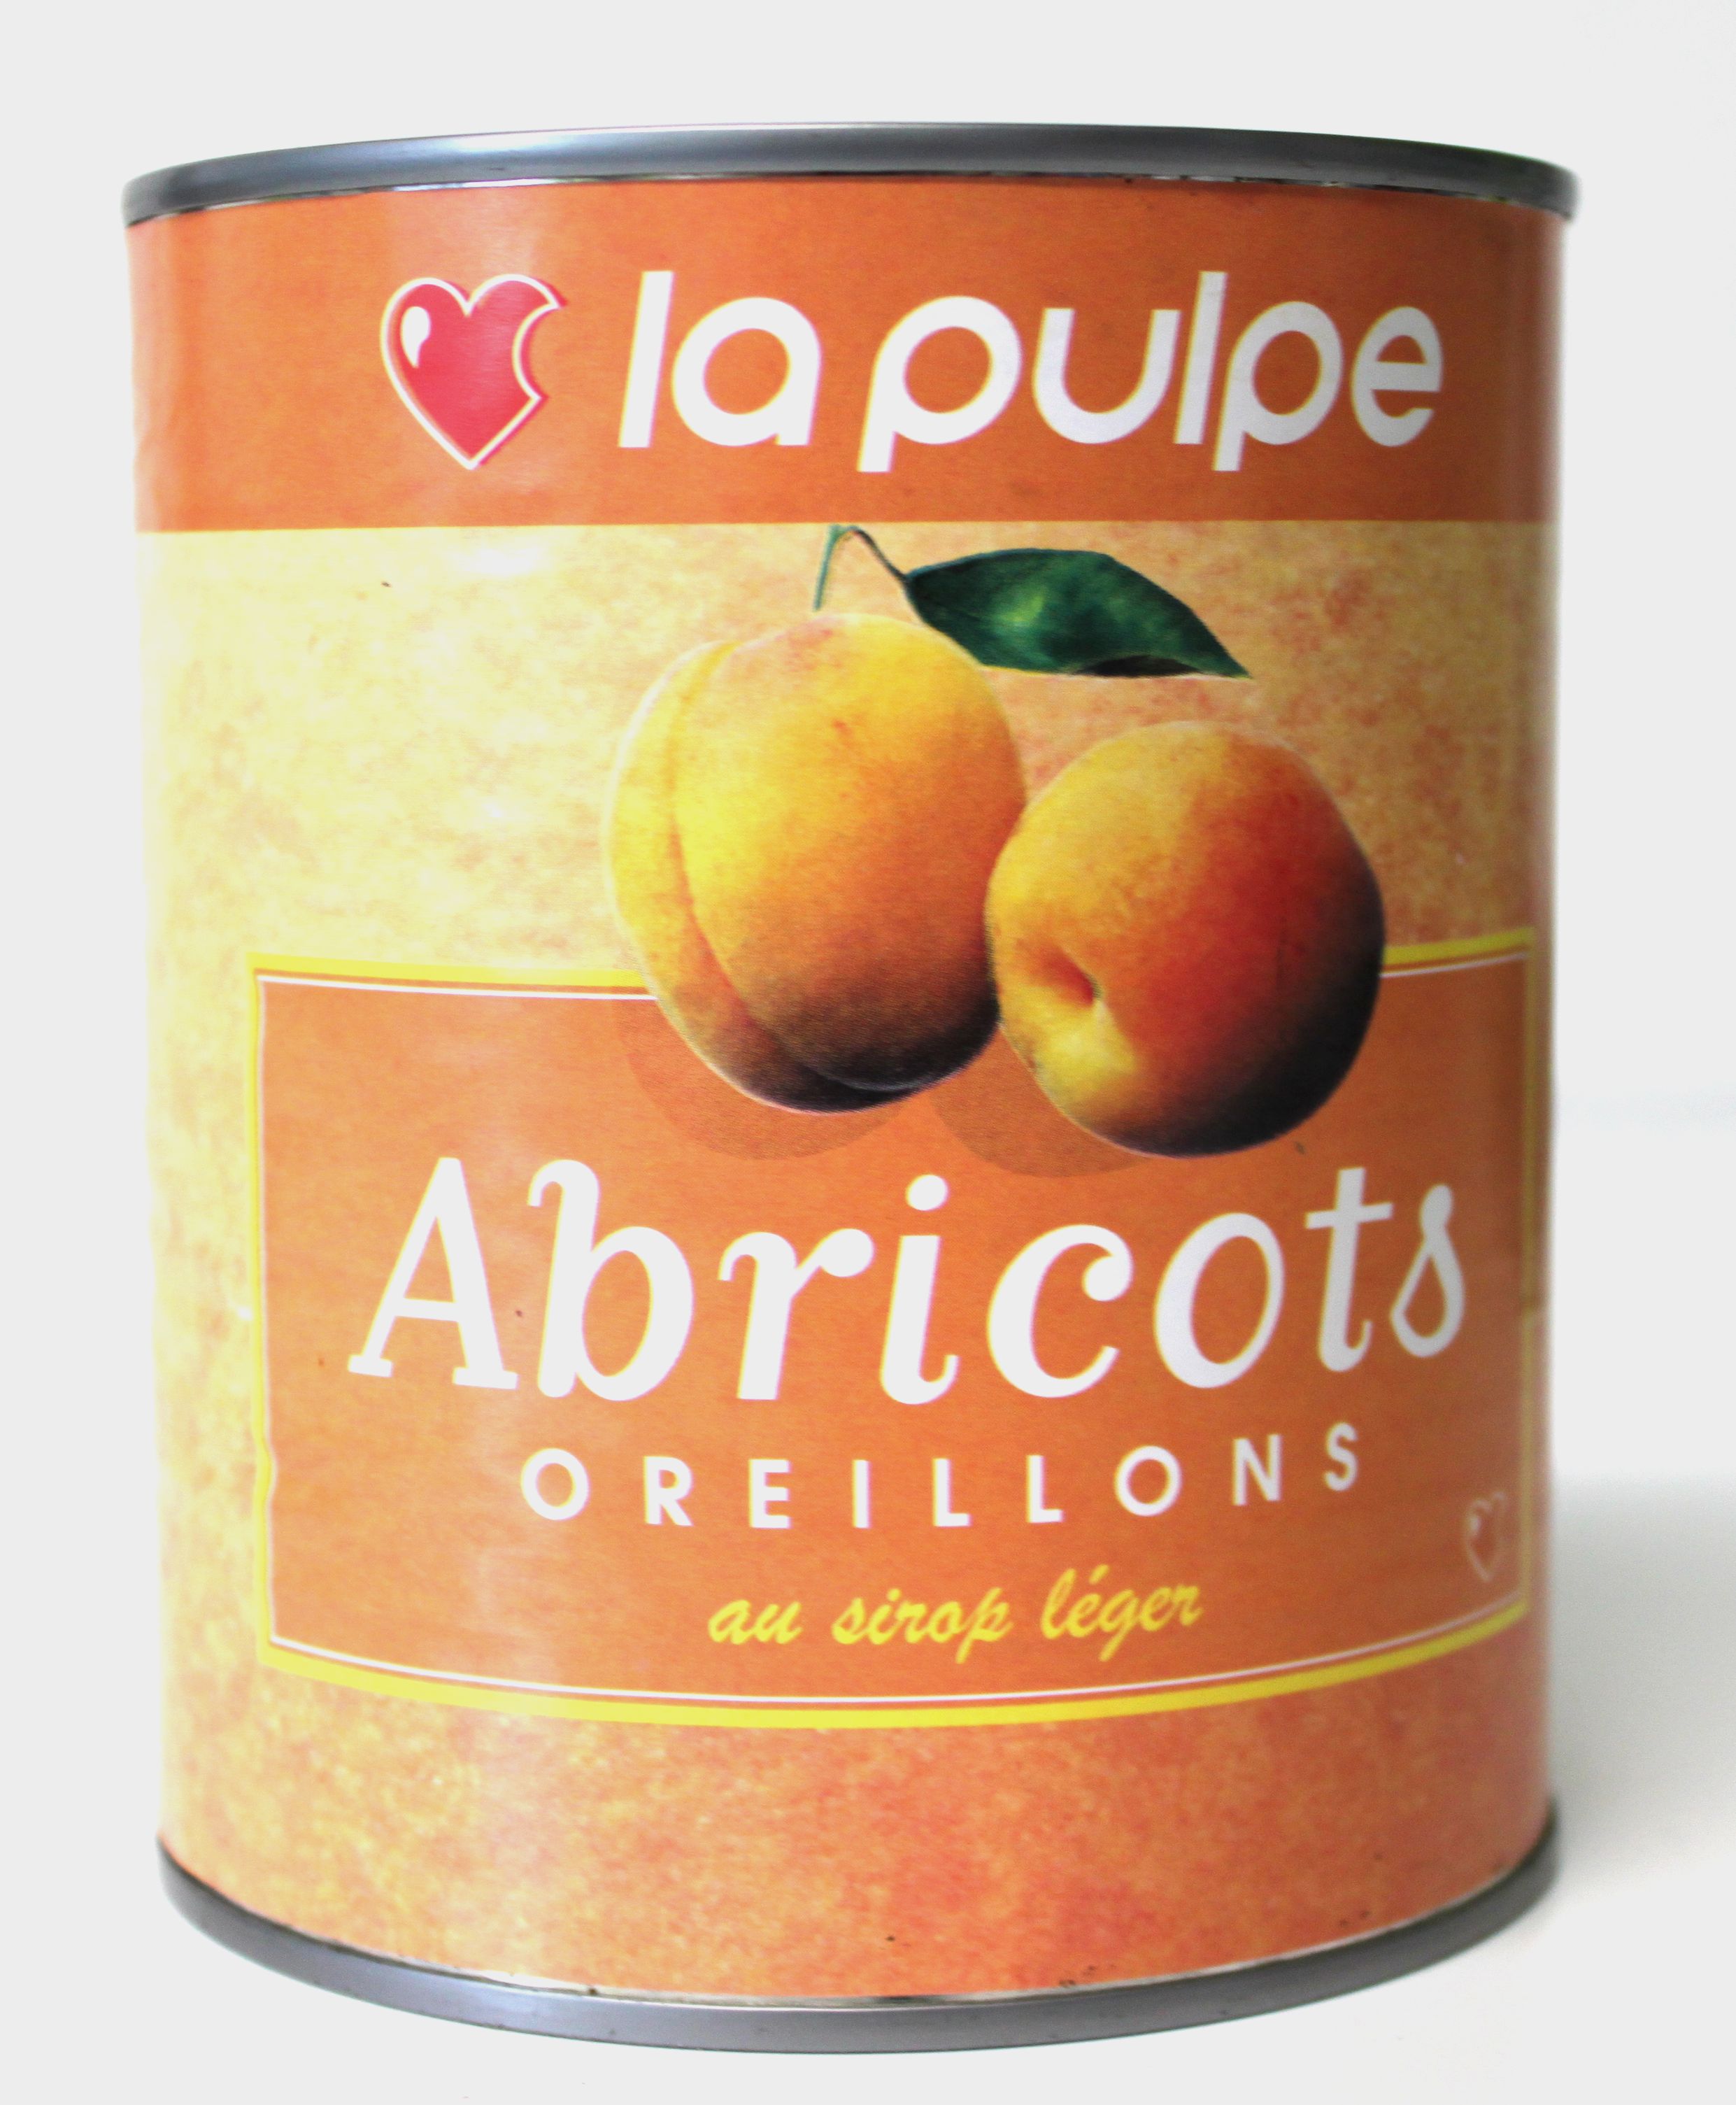 L'Abricot SUR FRUIT : eau de vie et compotée de fruit !